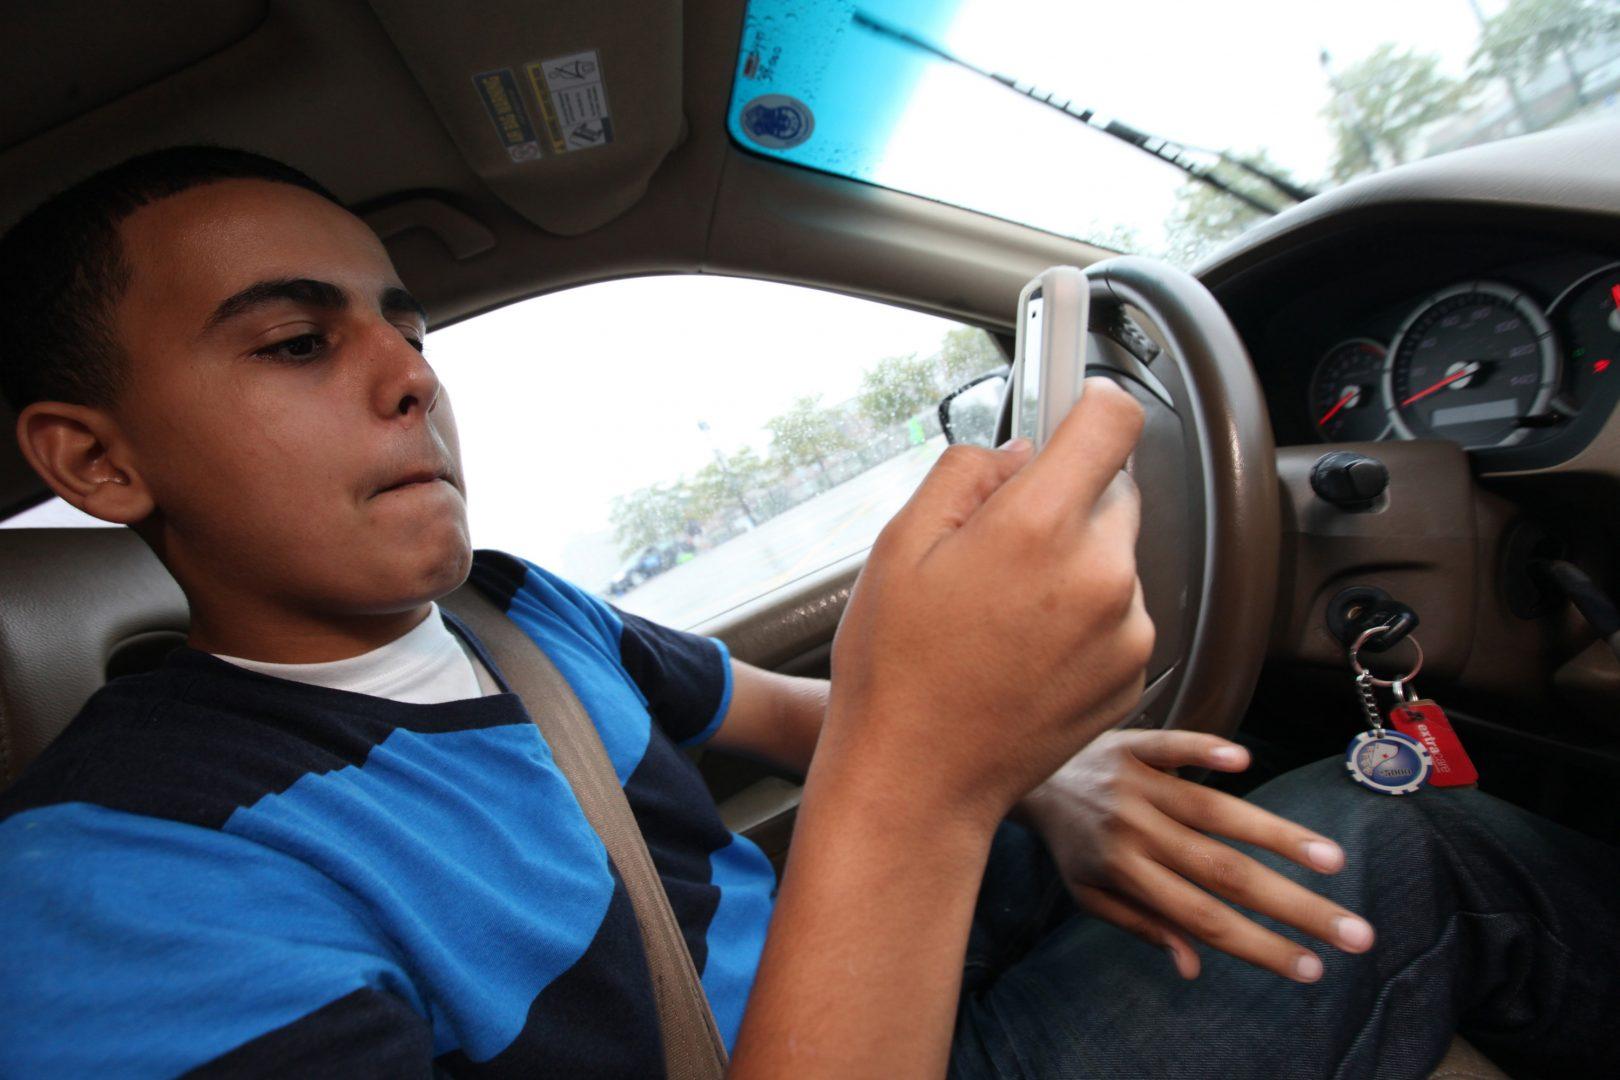 This drivers can. Подросток за рулем автомобиля. Взгляд водителя на дорогу. Мужчина в машине за рулем селфи. Safe Driving.